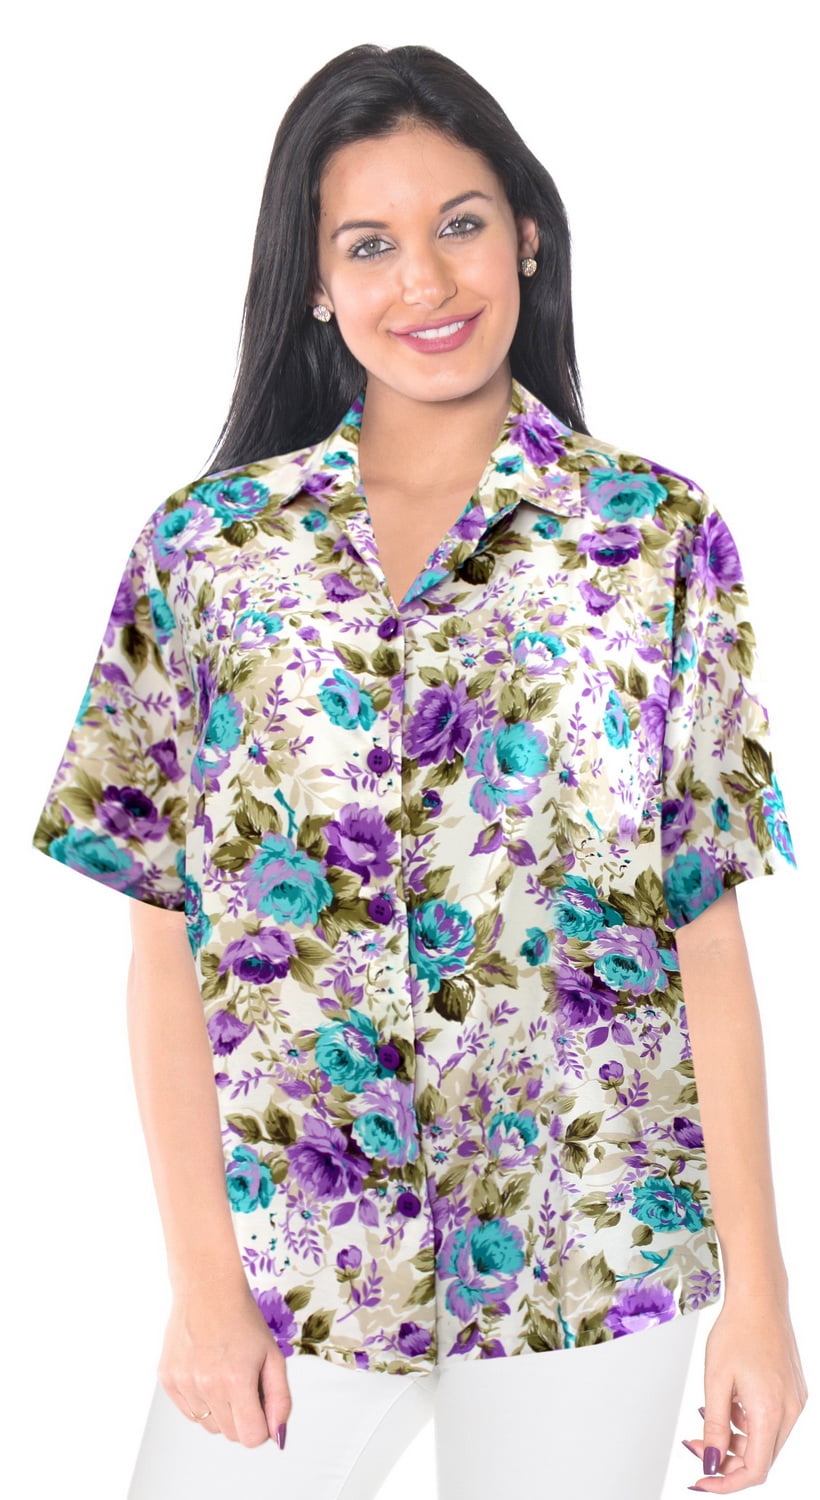 HAPPY BAY - HAPPY BAY Women's Plus Size Hawaiian Shirt Aloha Blouse ...